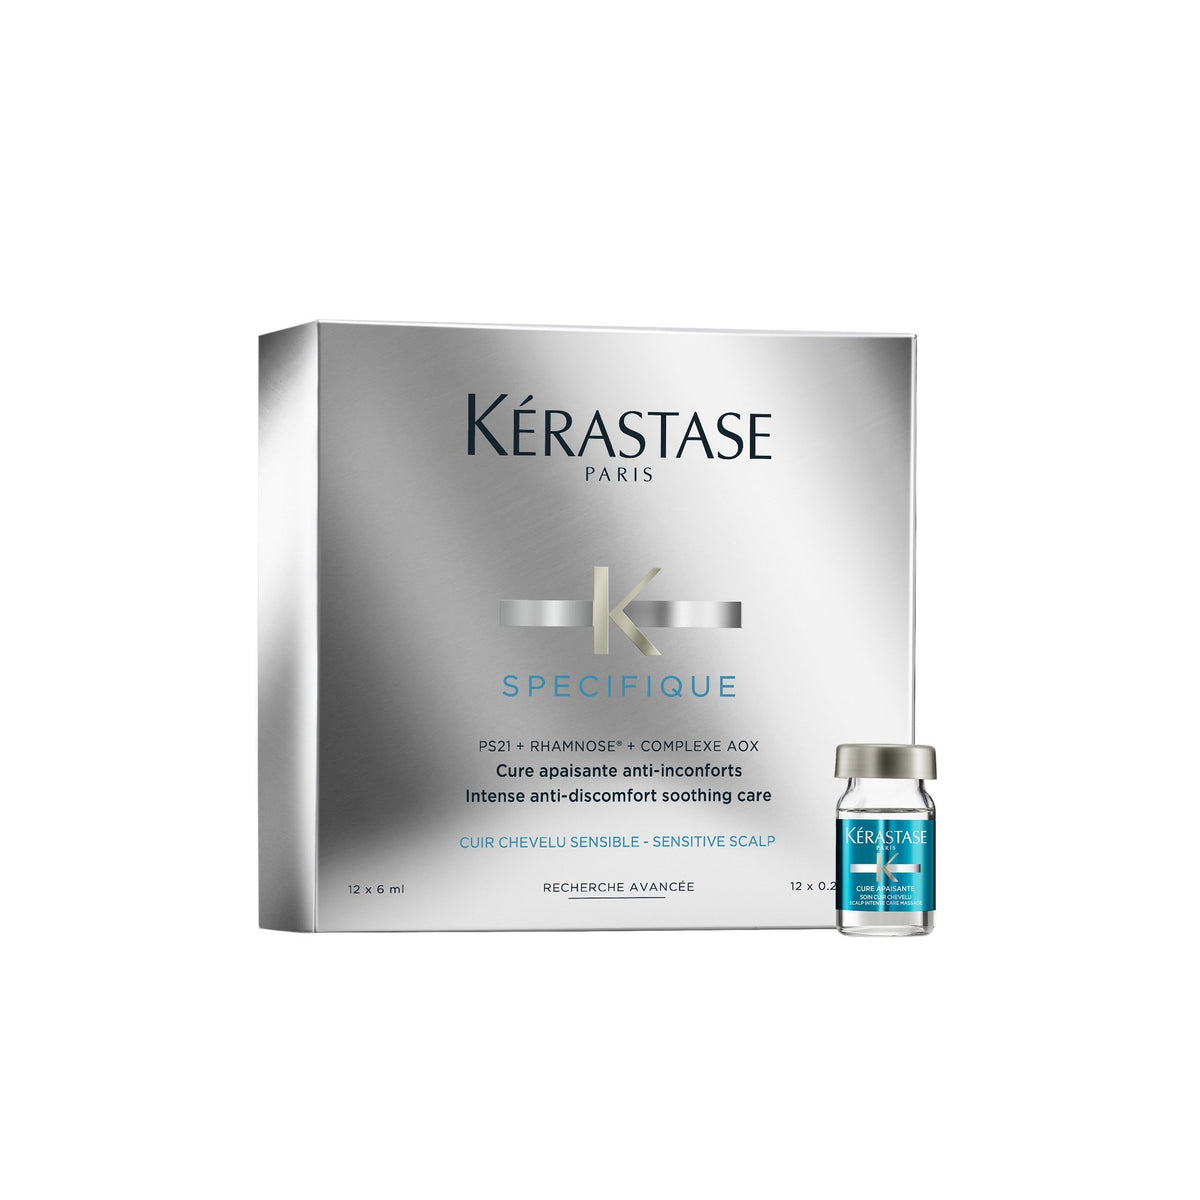 Kerastase Specifique Cure Apaisant Anti-Inconforts 12 x 6ml - Shop Online| Retail Box